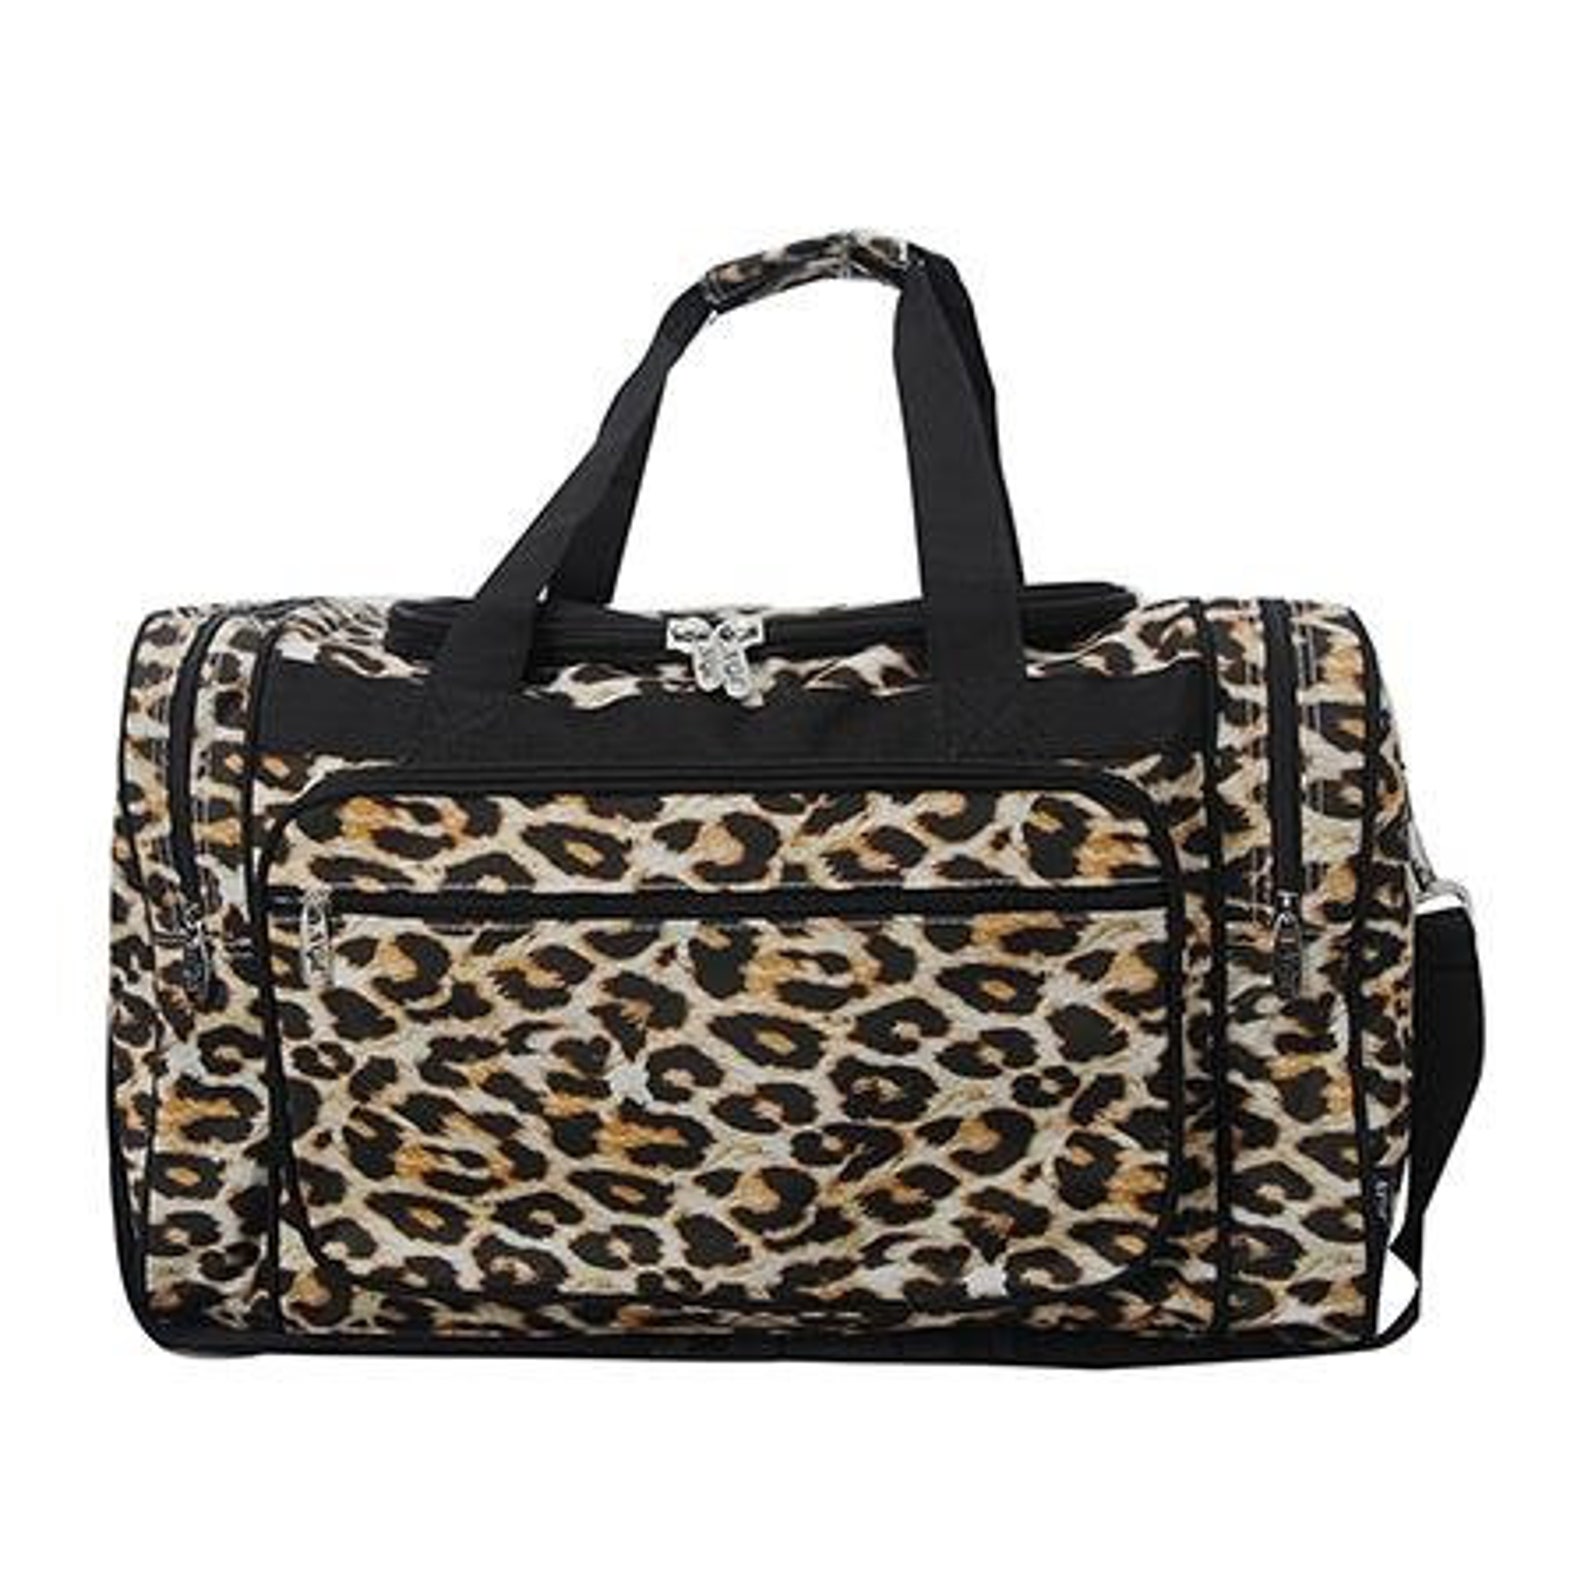 Wild Leopard NGIL Canvas 20 Duffle Bag With Free - Etsy UK